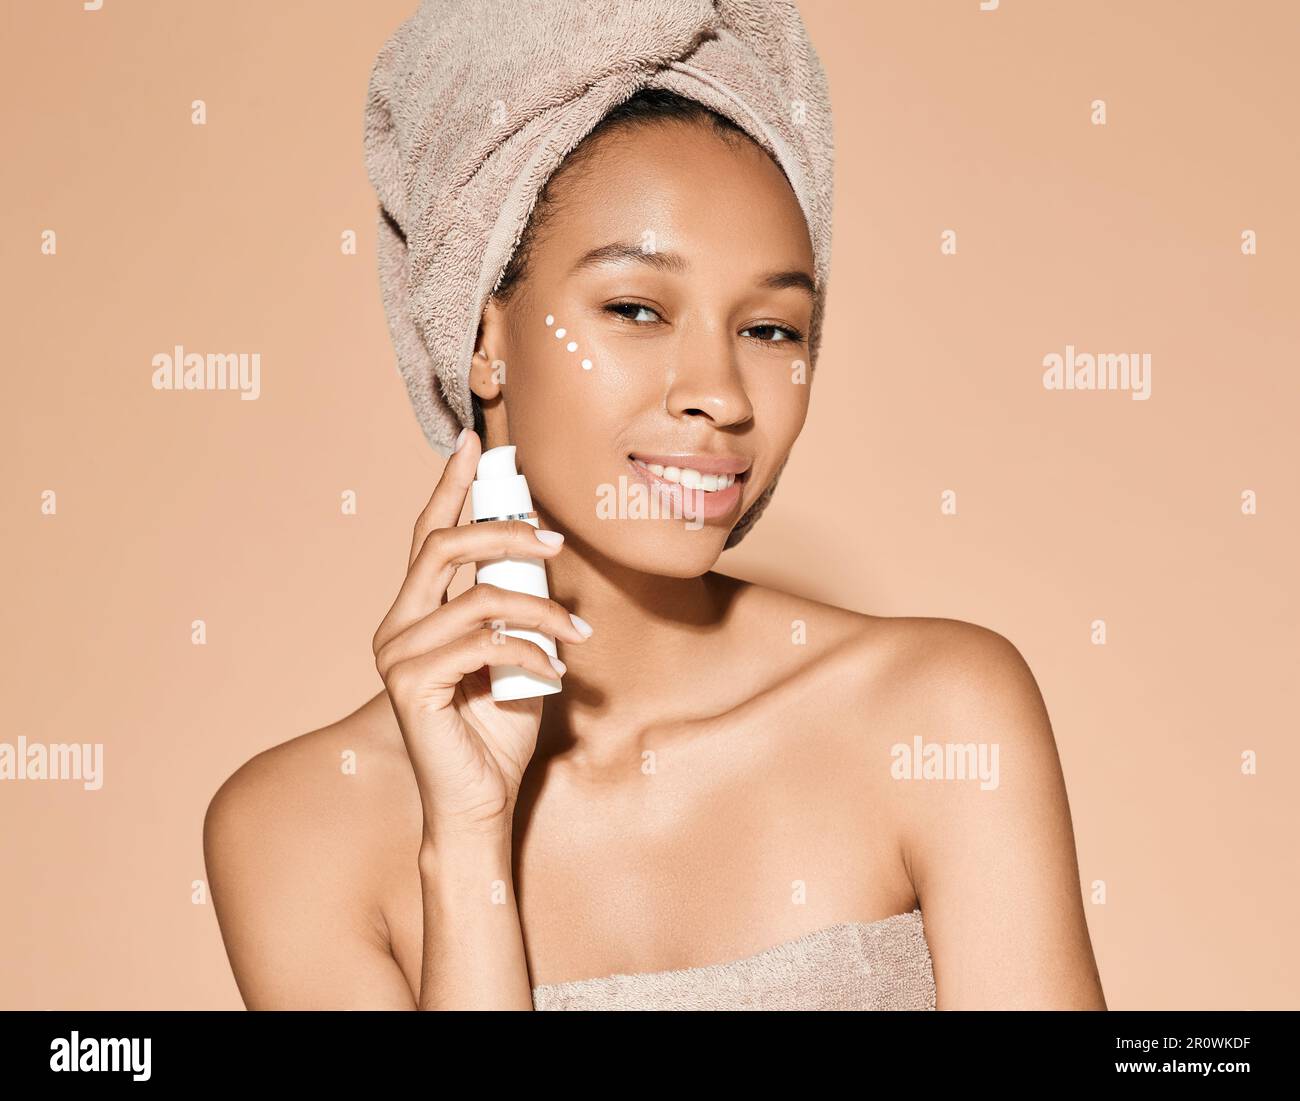 Crème hydratante pour le visage. Belle femme africaine tenant la crème hydratante à la main près de son visage, sur fond pastel. Crème hydratante pour le visage Banque D'Images